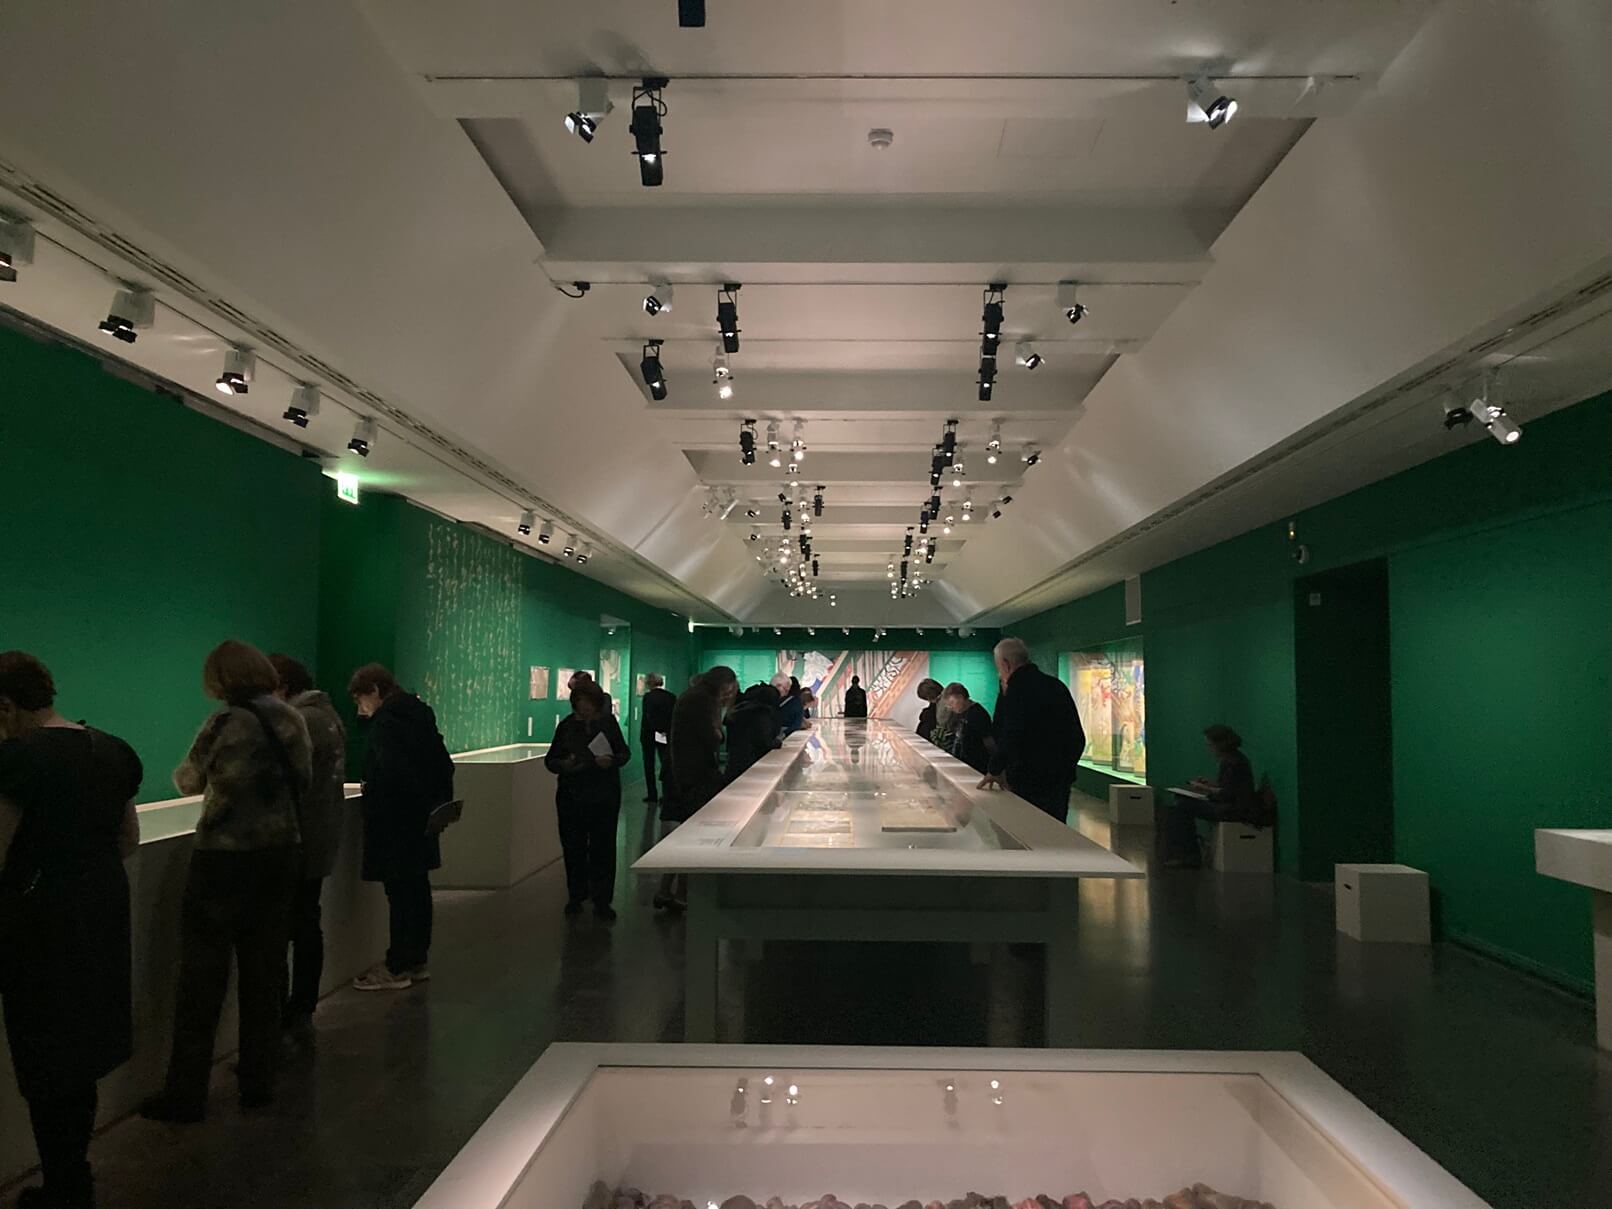 パリ最新情報「パリの美術館で雅、『源氏物語』の特別展が開催される」